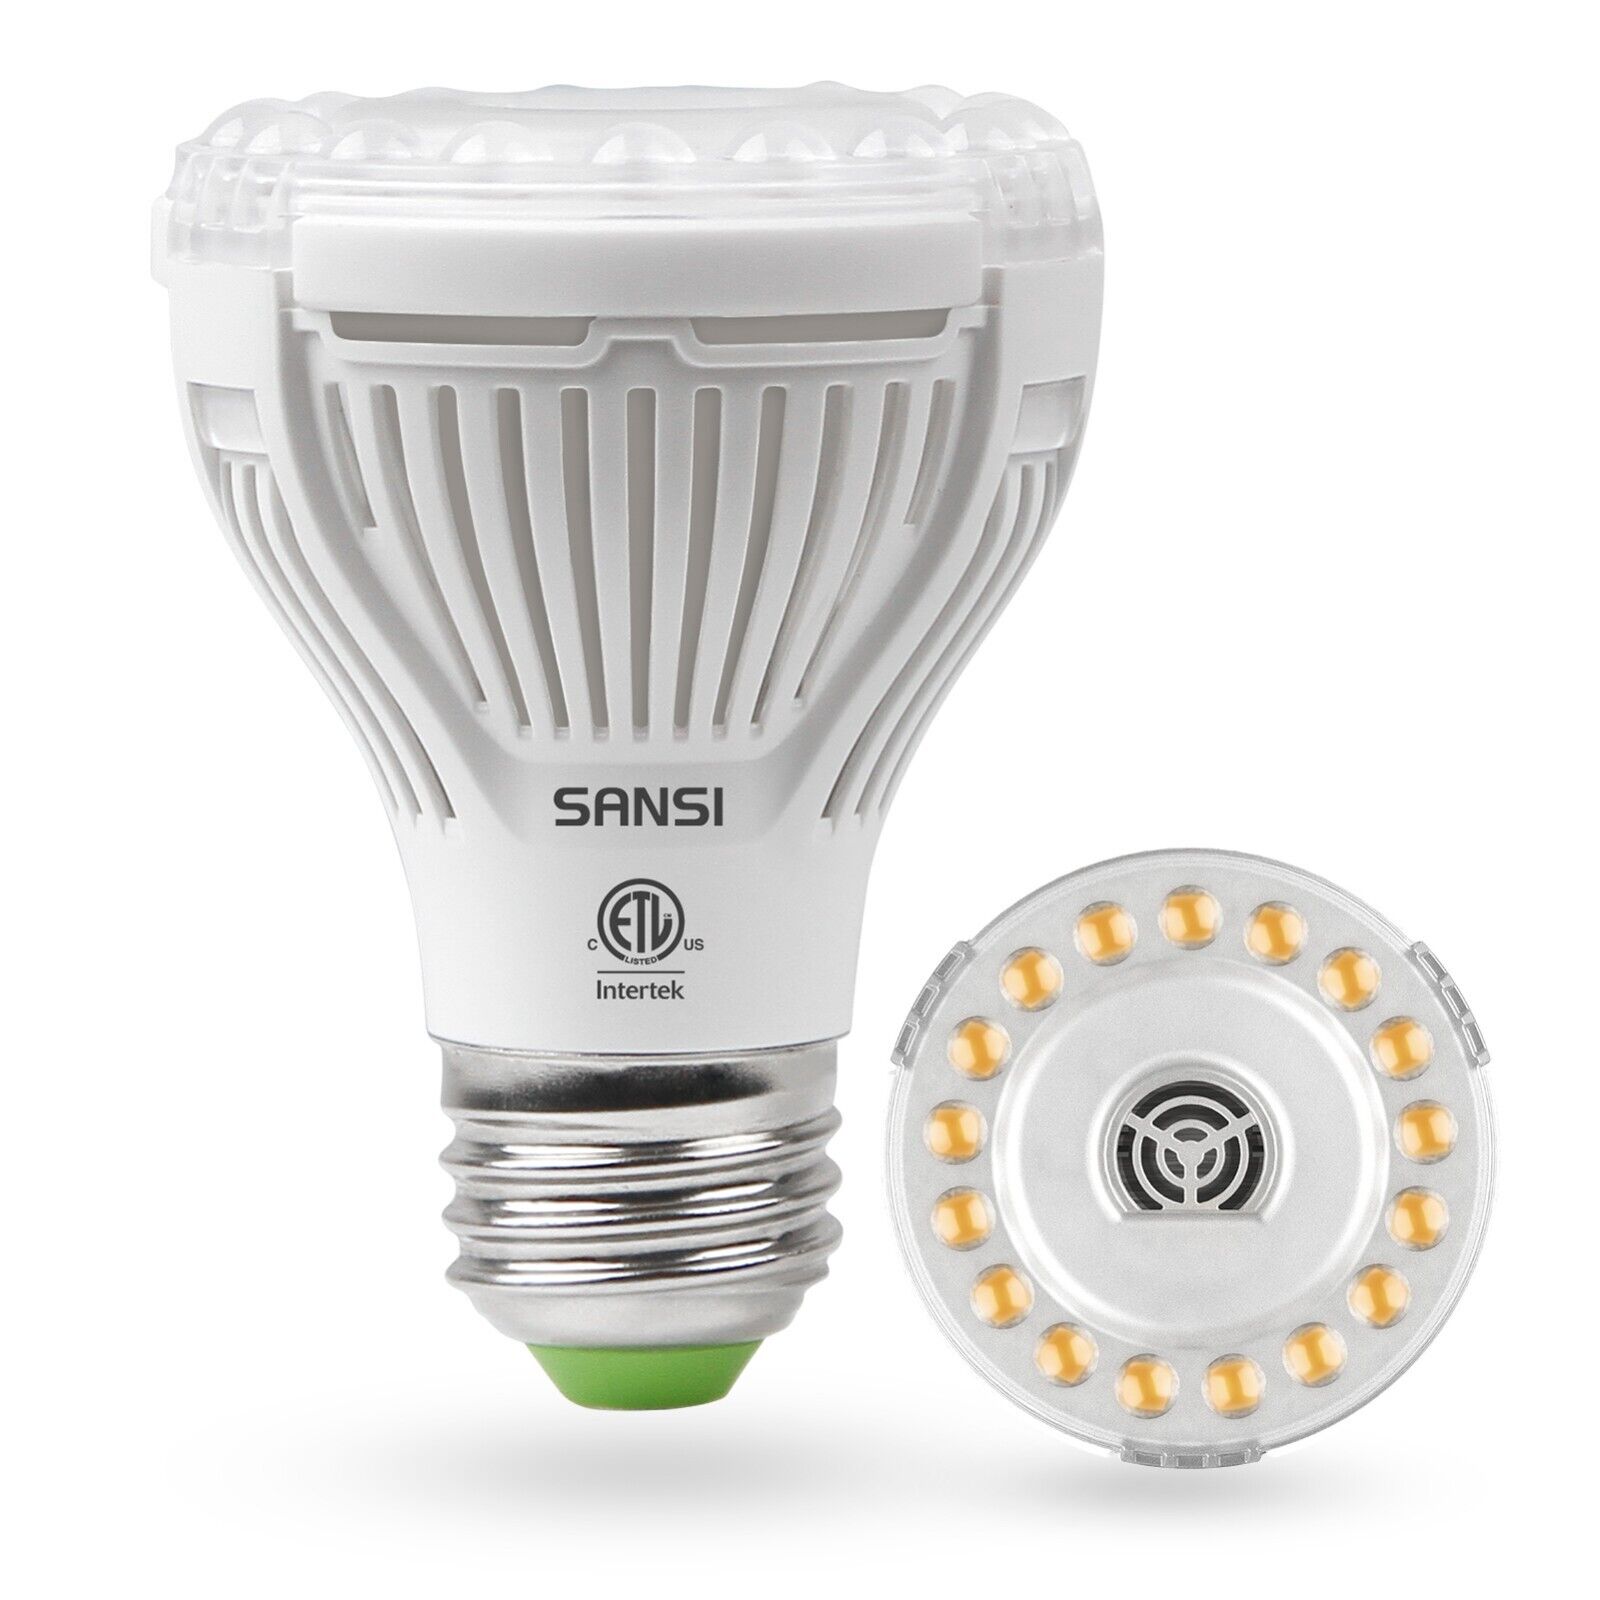 SANSI 10W LED Grow Light Bulb Full Spectrum Indoor Grow Light Veg Bloom Sunlike